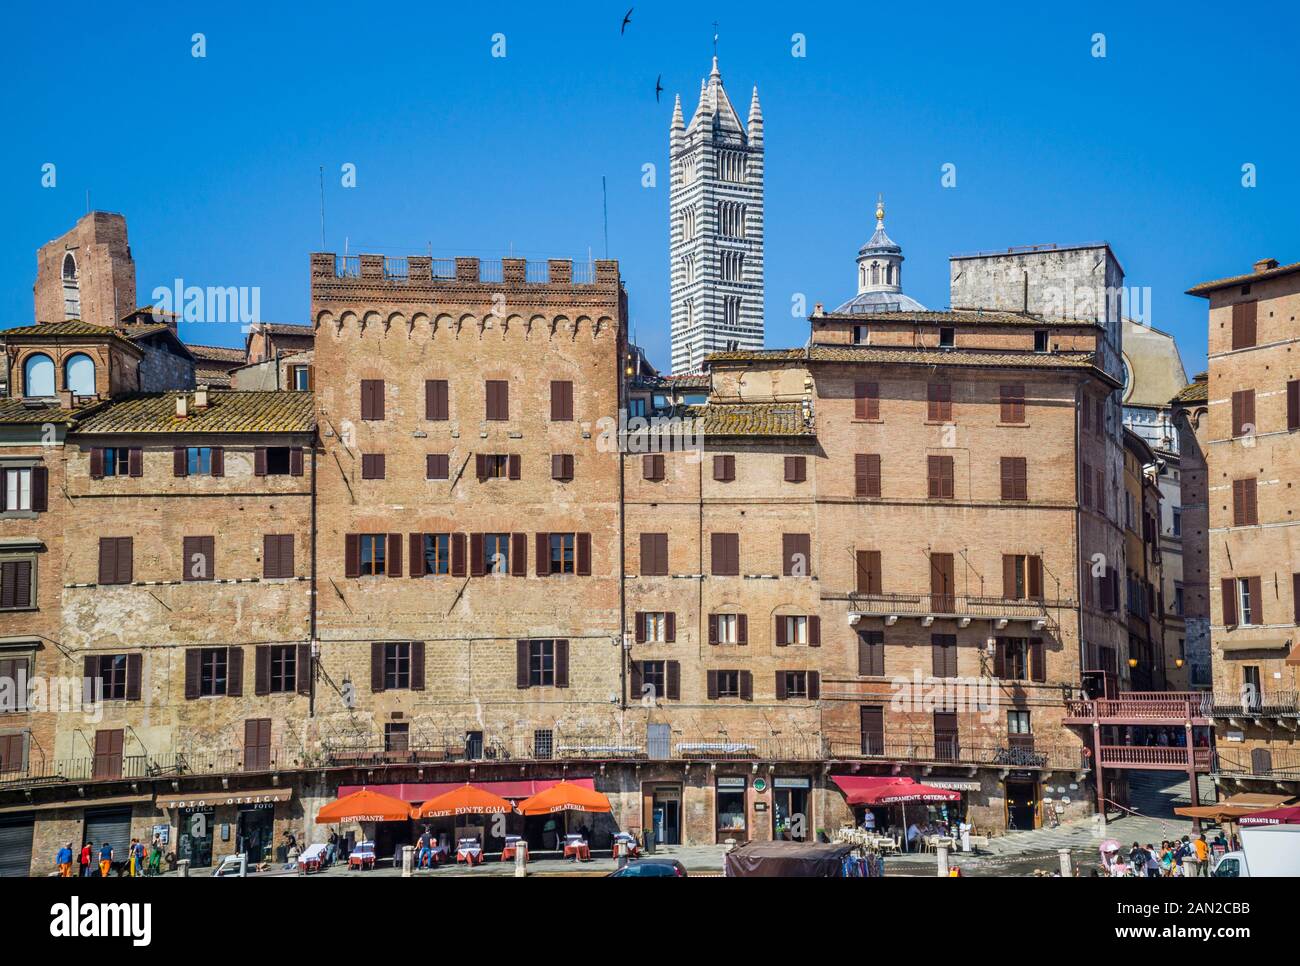 Palazzi Signorili (Herrenhäuser) zeichnen den enormen öffentlichen Raum der mittelalterlichen Piazza del Campo im historischen Zentrum von Siena vor dem Hintergrund Stockfoto